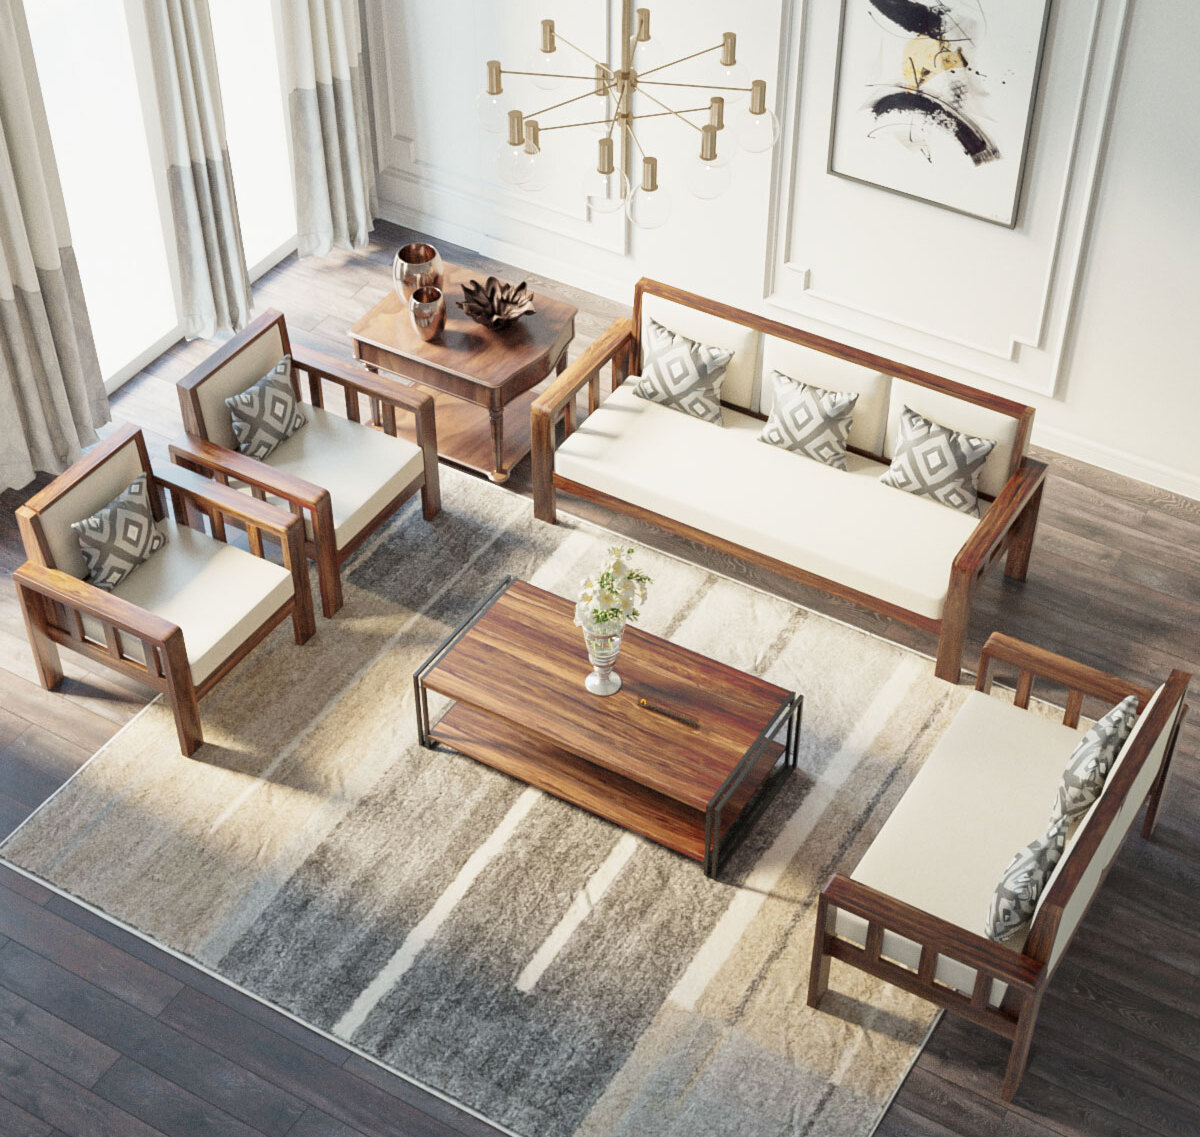 Lời khuyên giúp bạn sở hữu bộ bàn gỗ phòng khách đẹp như ý muốn 